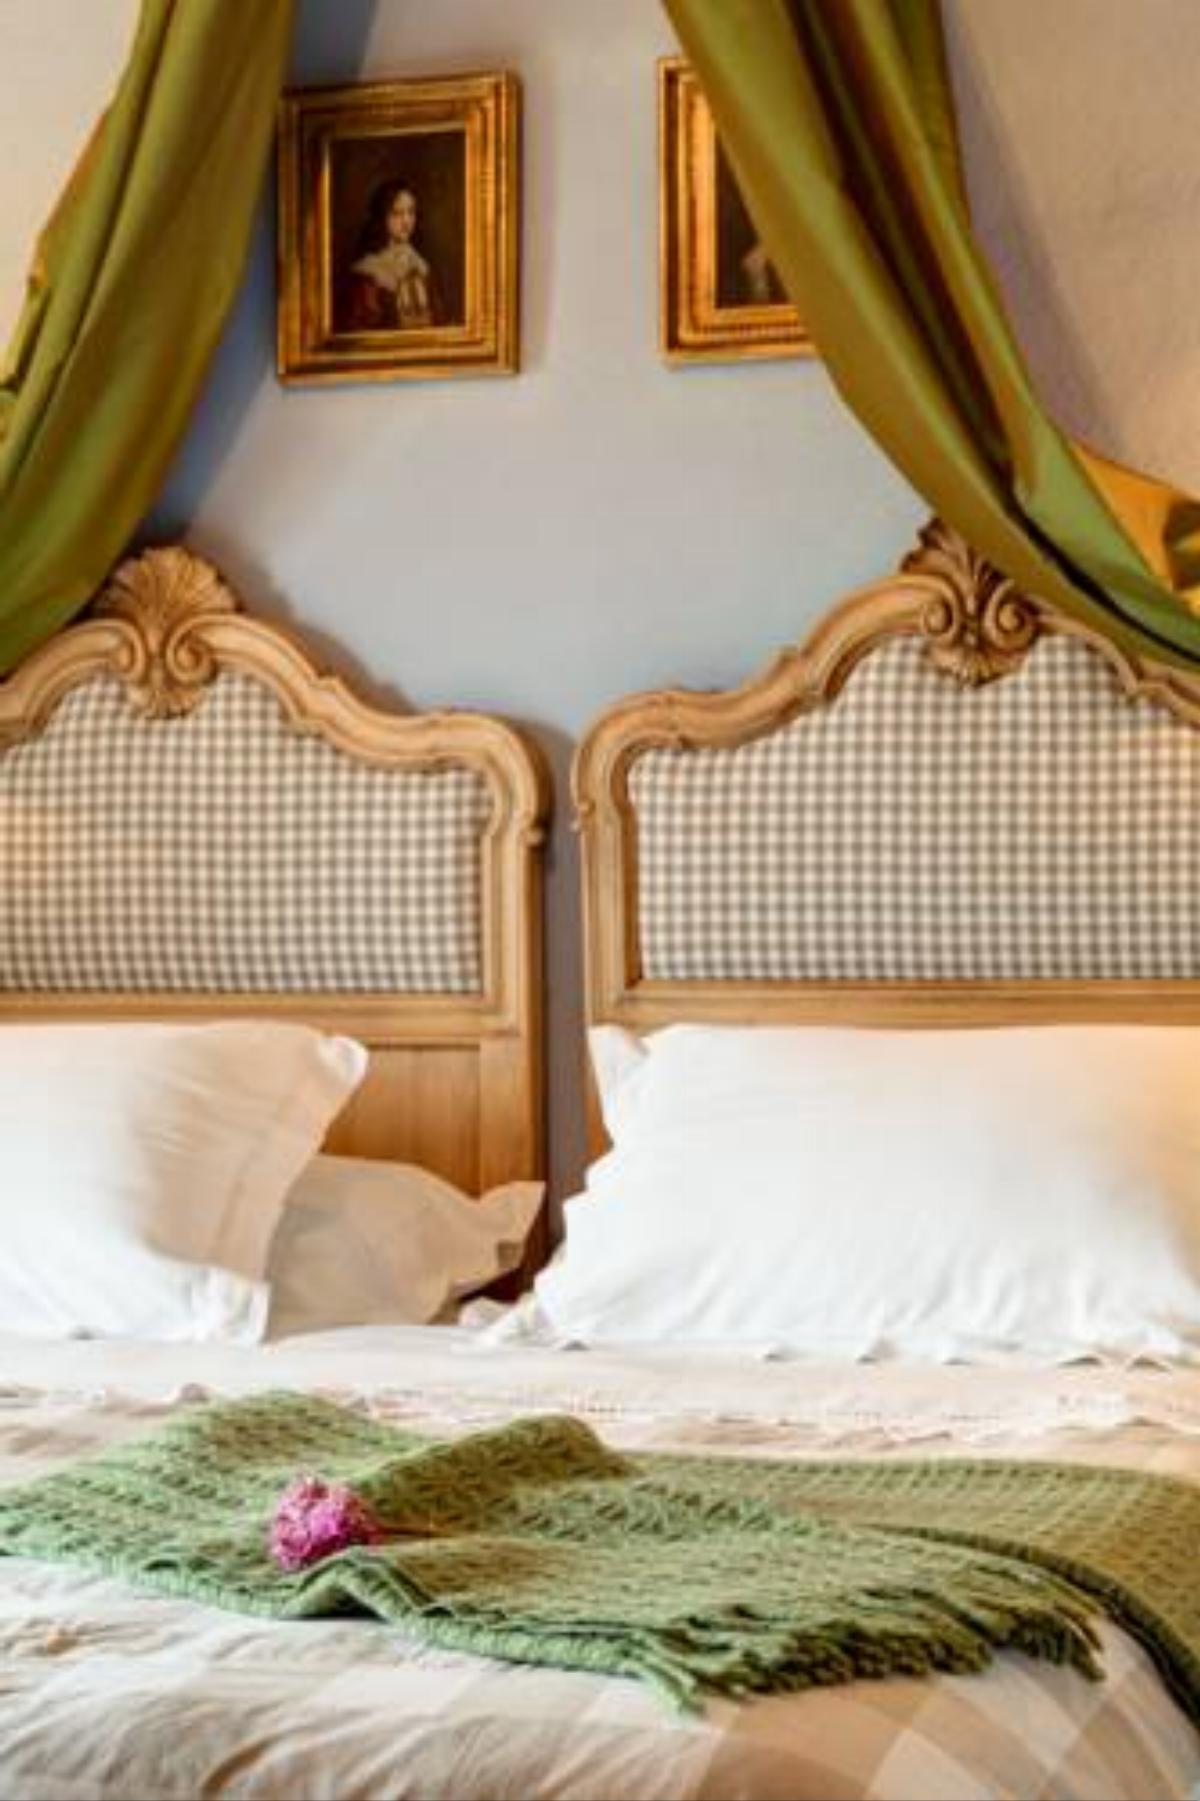 La Casa Delle Grottesche Hotel Cavour Italy